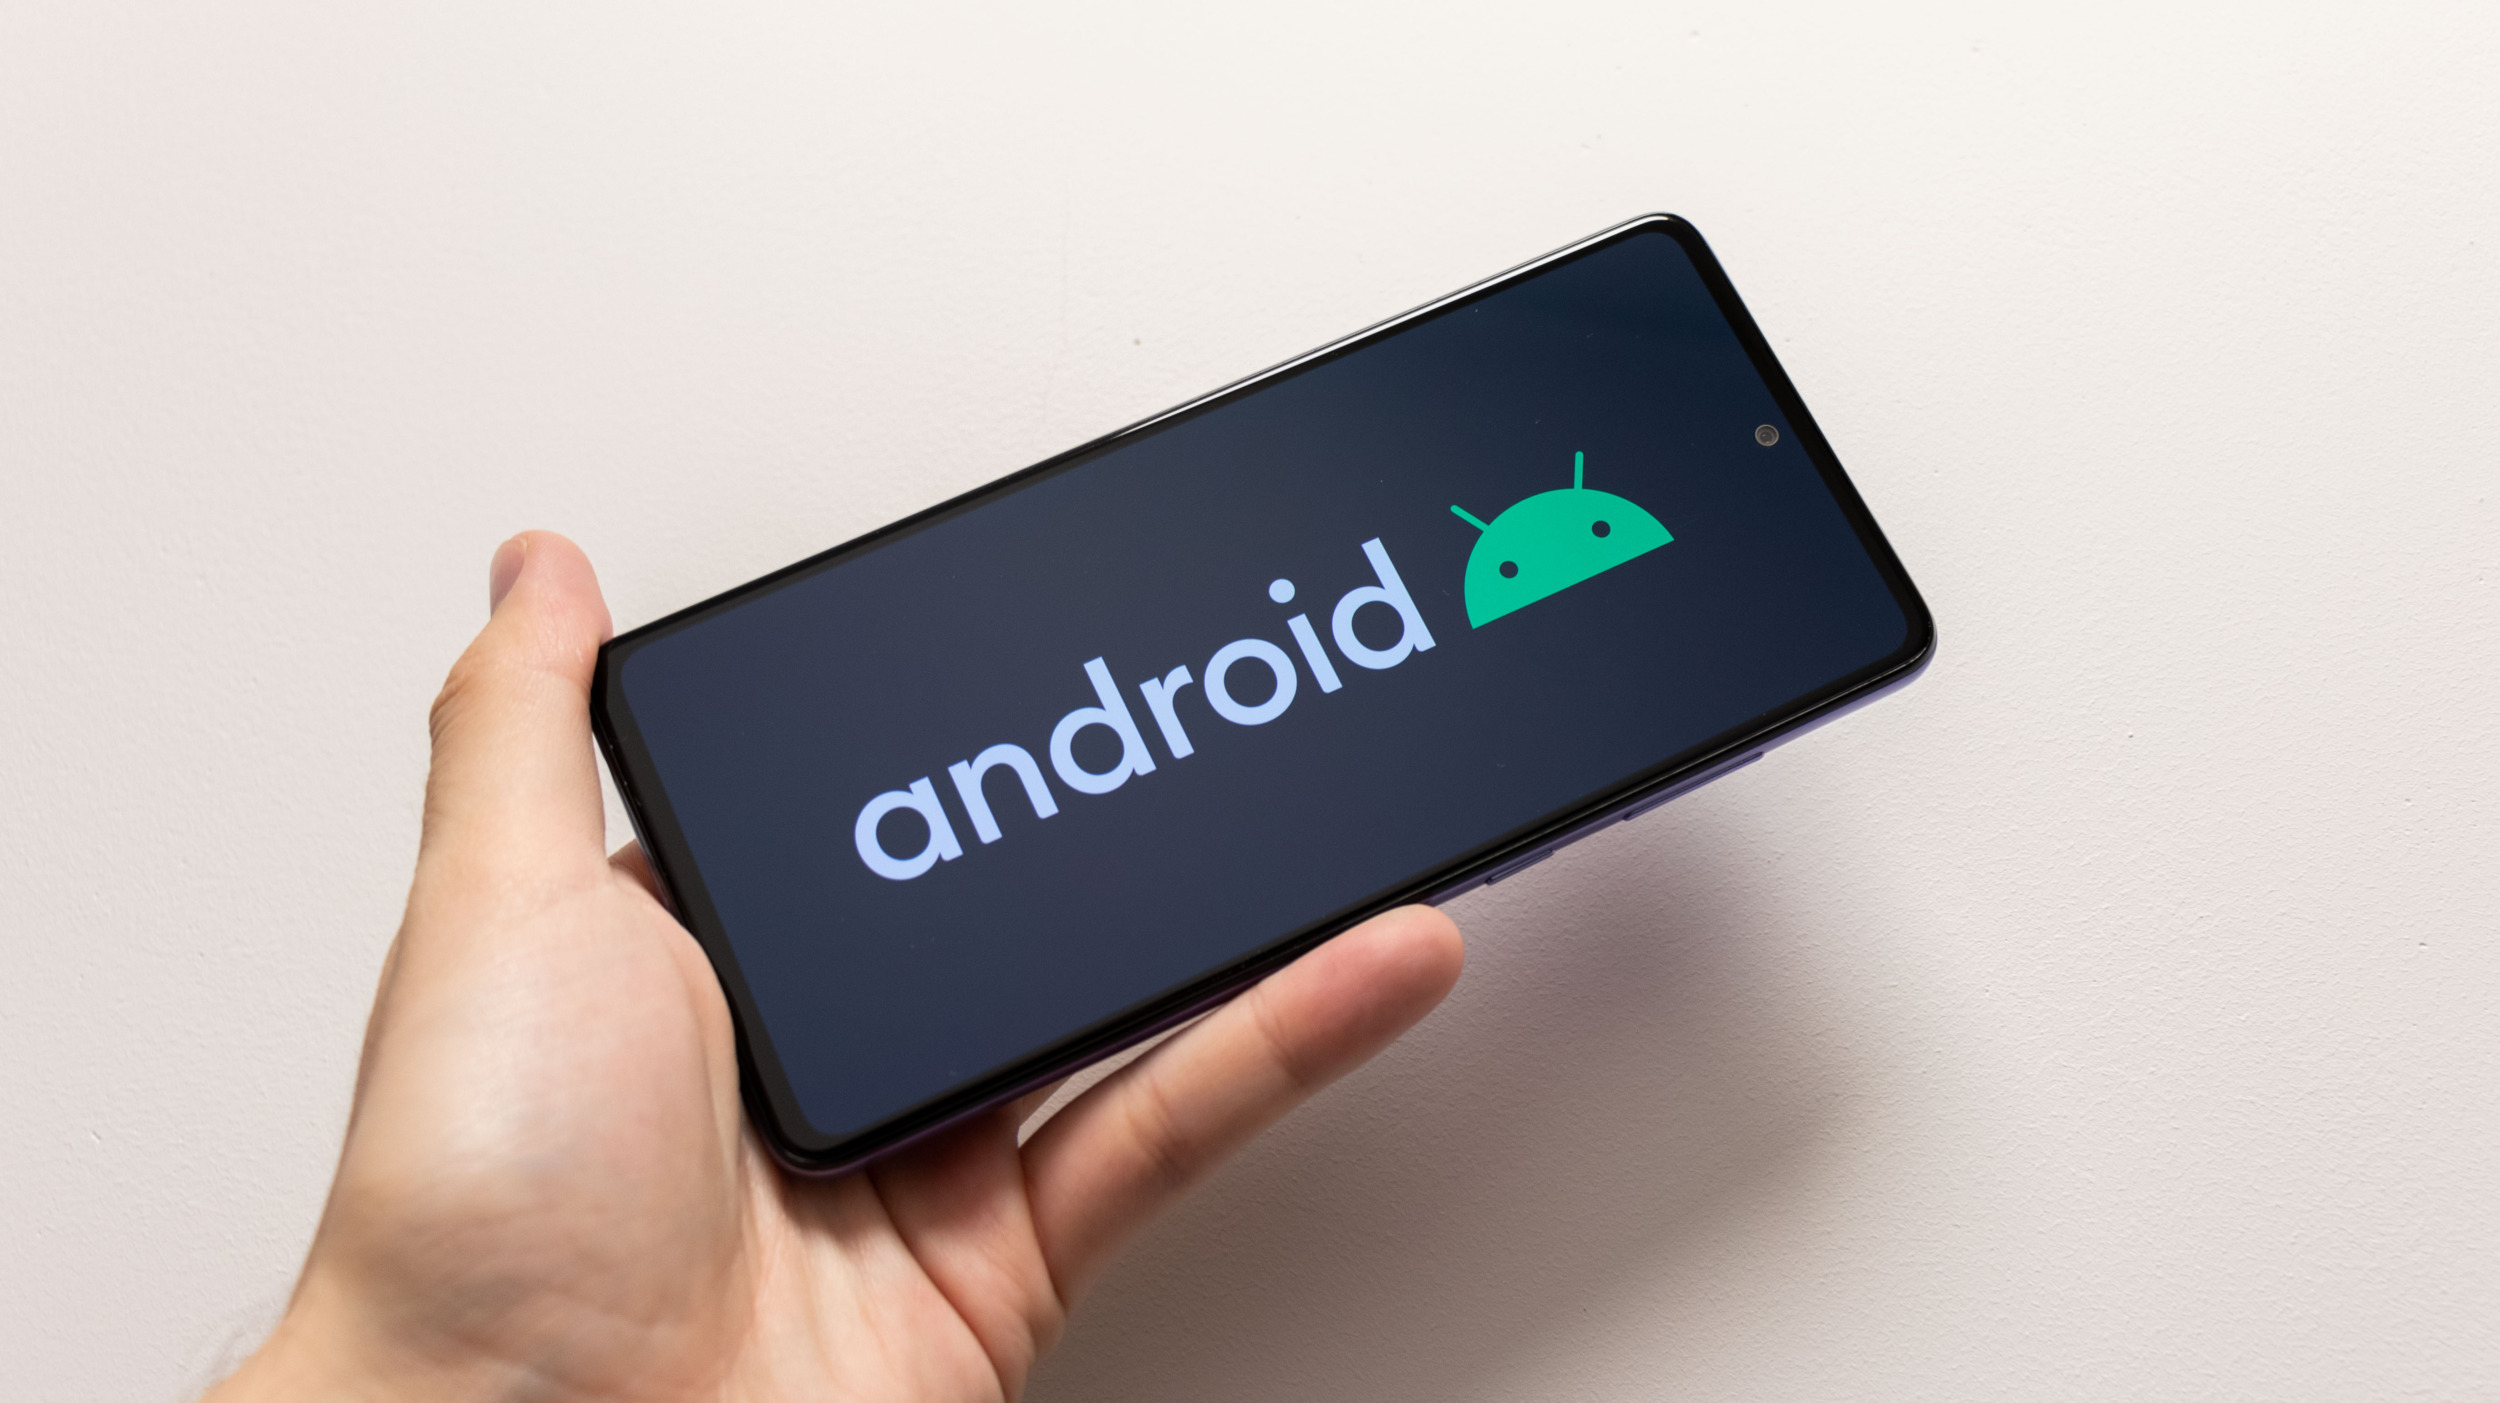 Vychází Android 12 Beta 5, poslední před vydáním stabilní verze [aktualizováno]